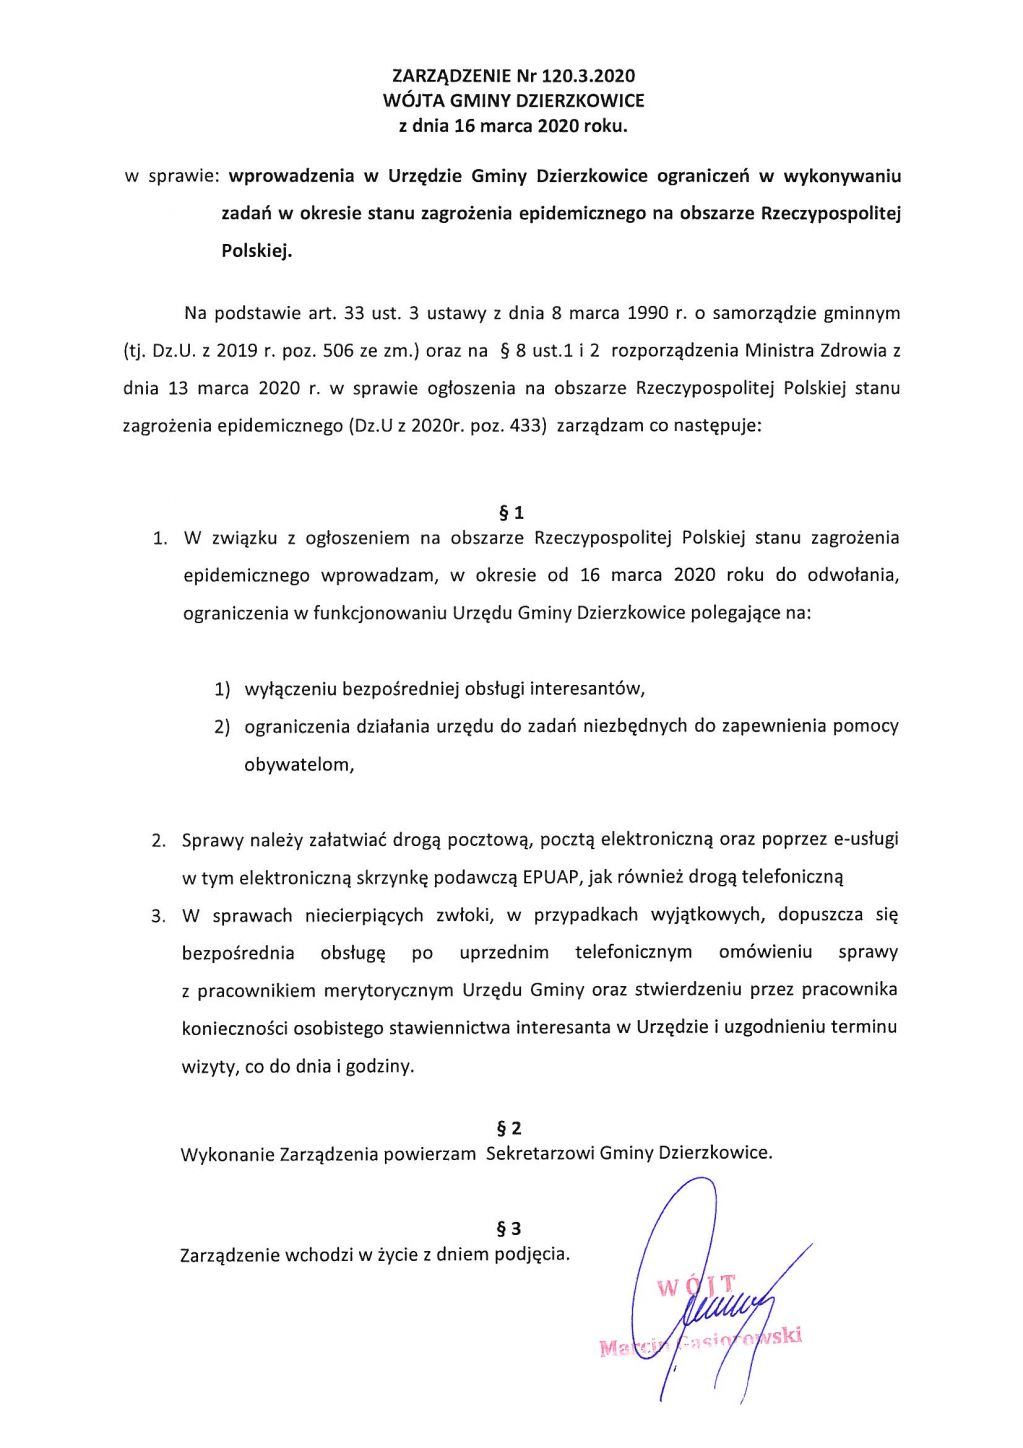 Zarządzenie nr 120.3.2020 Wójta Gminy Dzierzkowice z dnia 16 marca 2020 roku w sprawie wprowadzenia w Urzędzie Gminy Dzierzkowice ograniczeń w wykonywaniu zadań w okresie stanu zagrożenia epidemicznego